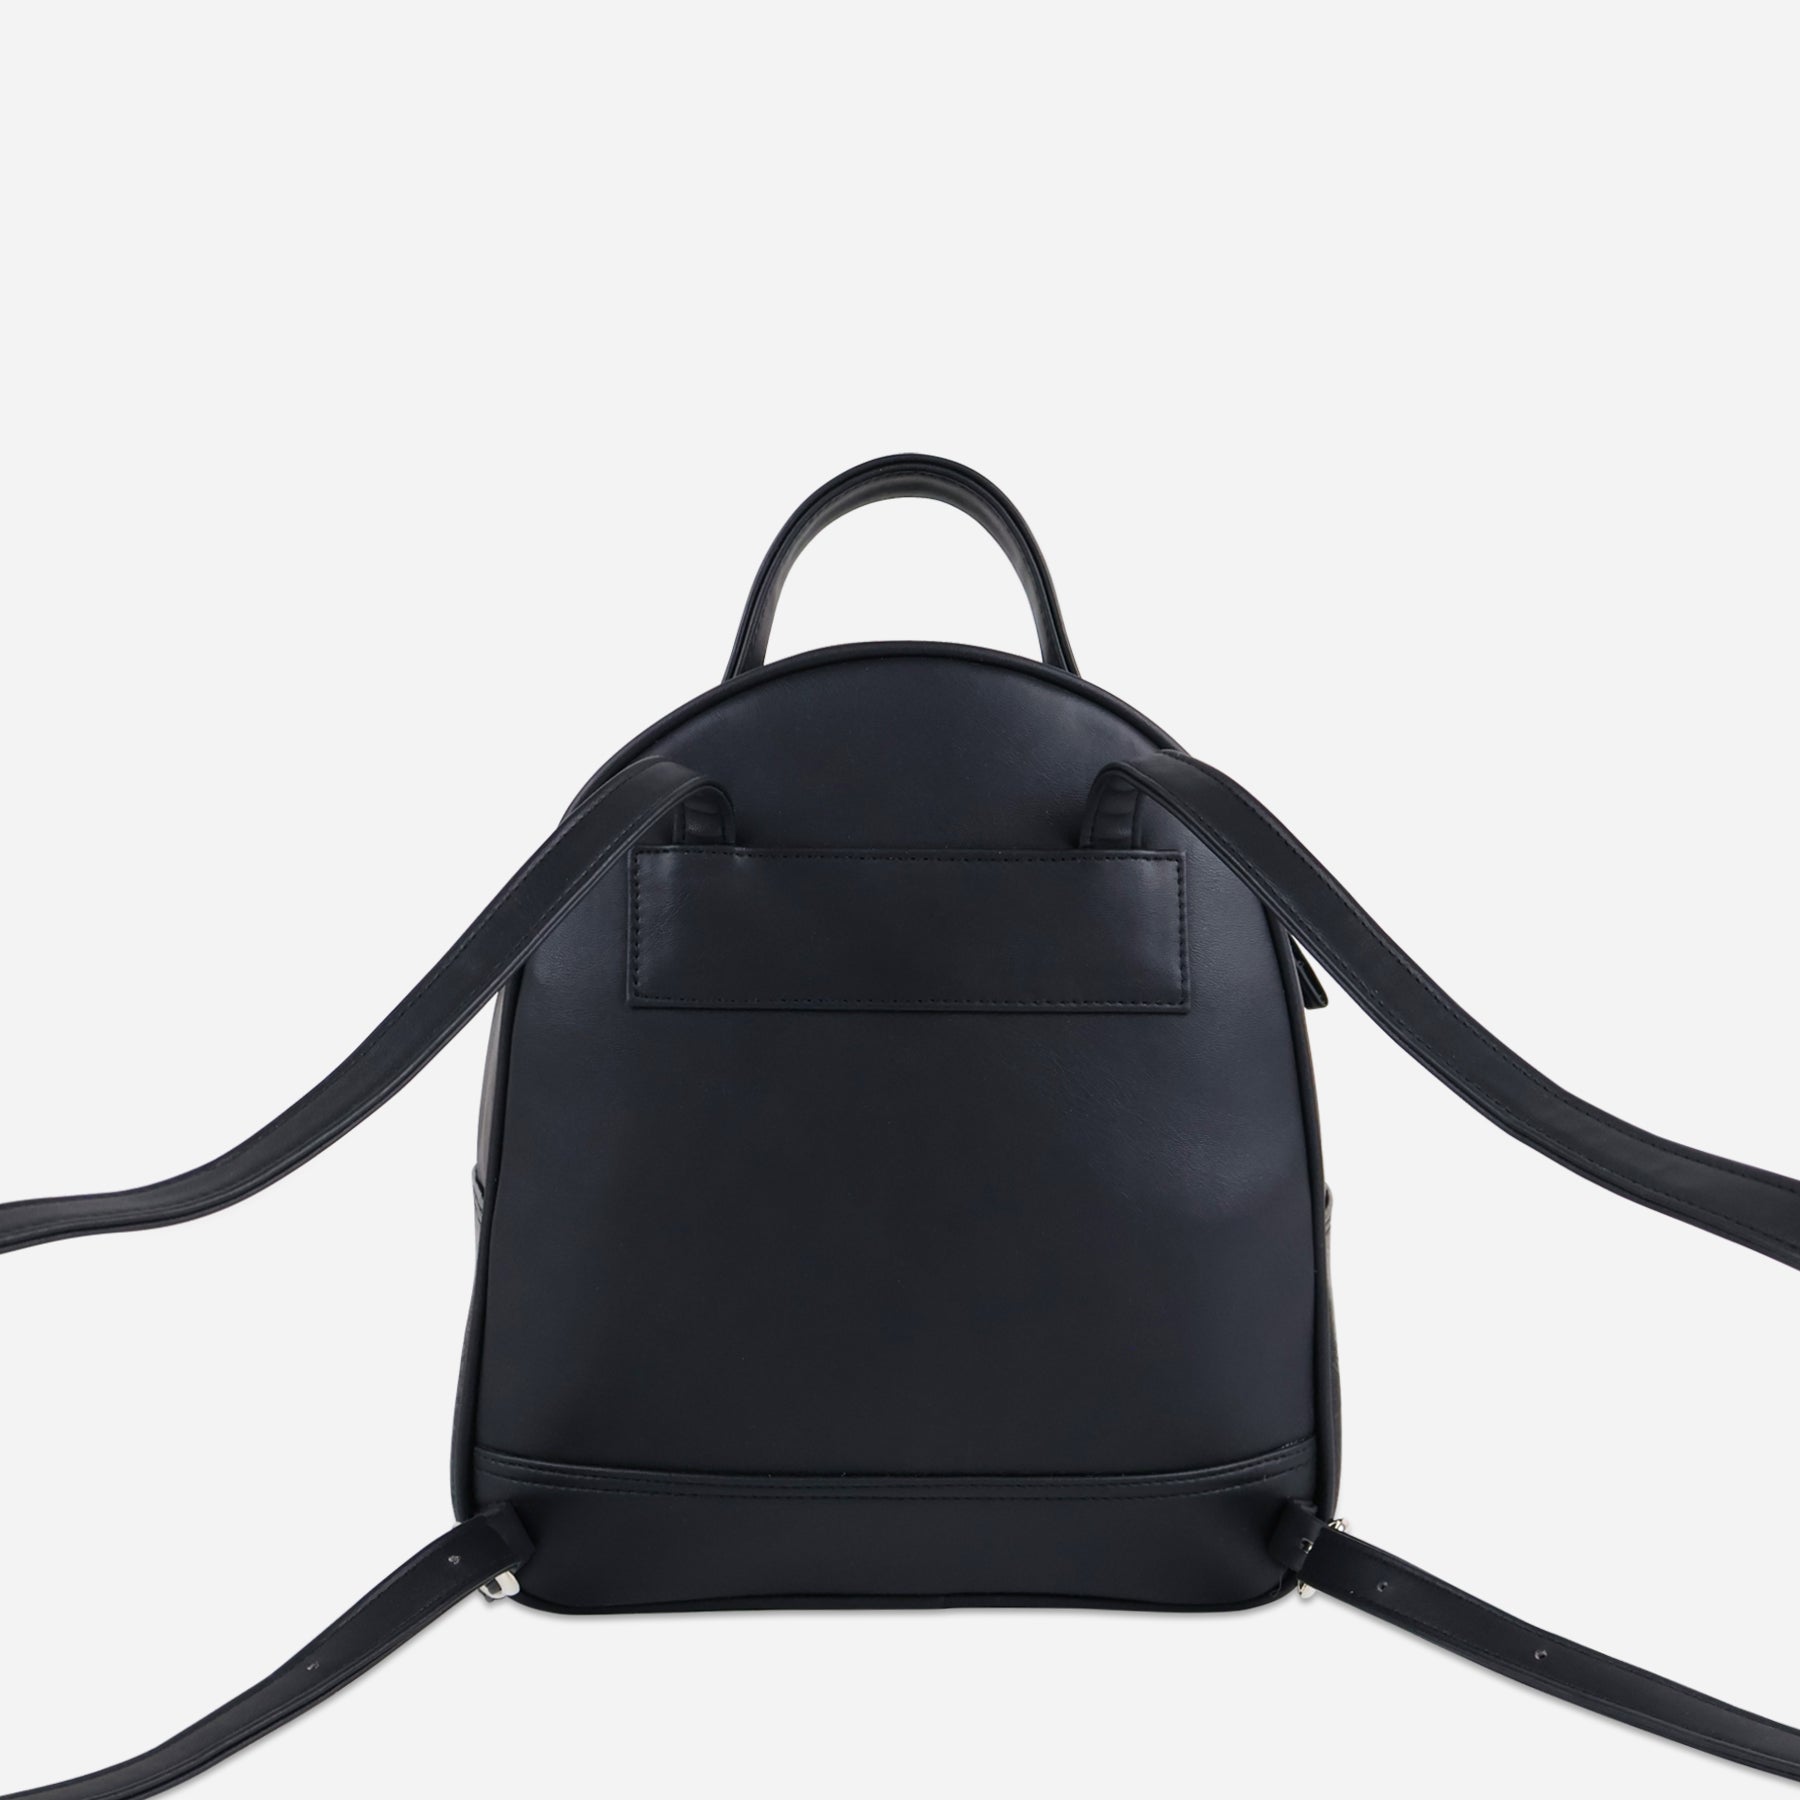 Black Rachel mini backpack women s backpack vegan leather vegan bag back Thamon